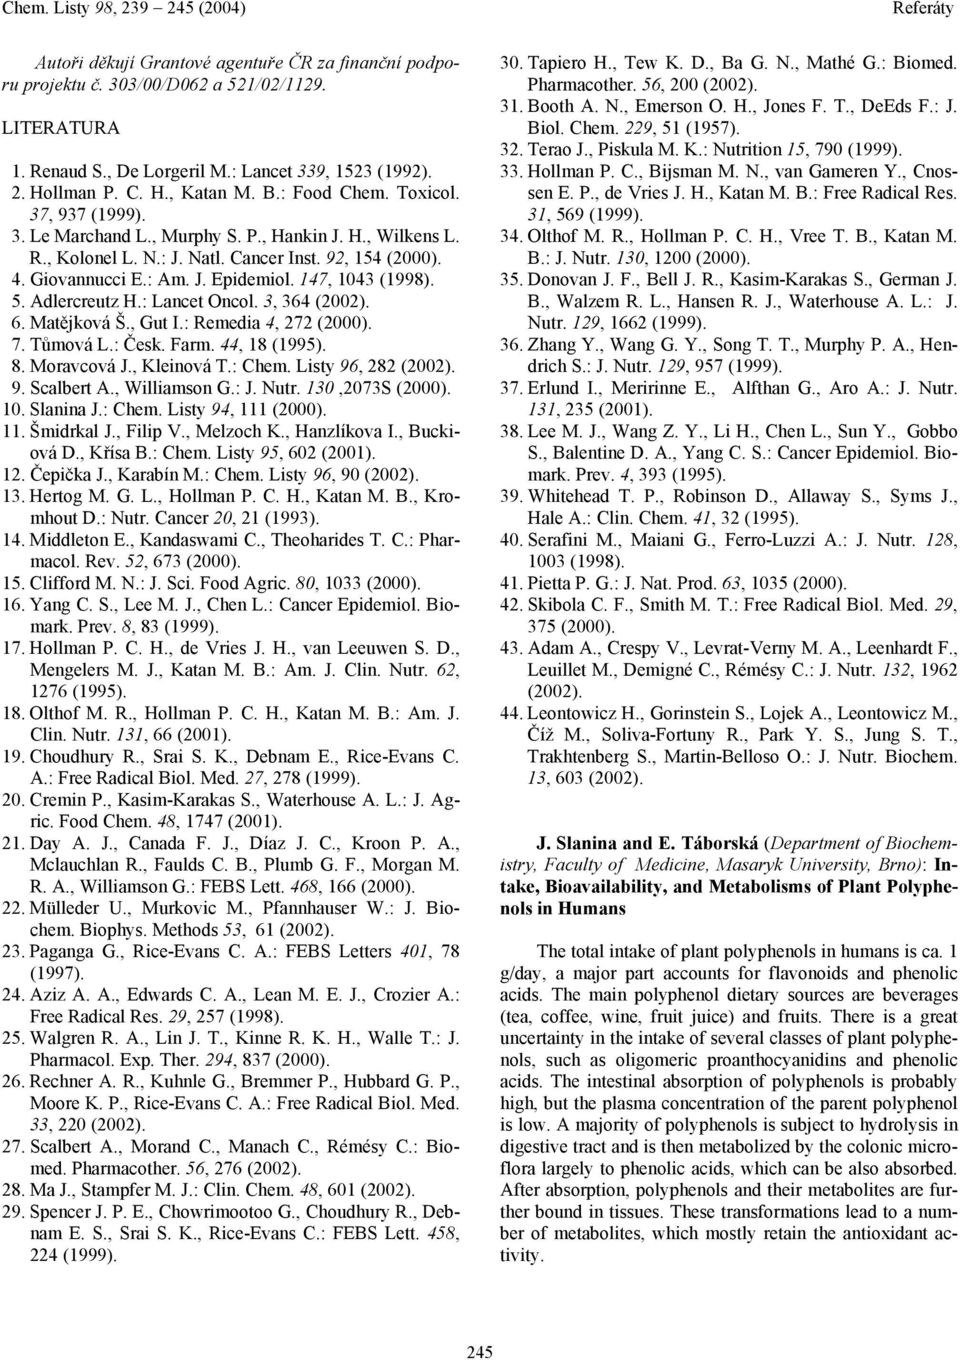 147, 1043 (1998). 5. Adlercreutz H.: Lancet ncol. 3, 364 (2002). 6. Matějková Š., Gut I.: Remedia 4, 272 (2000). 7. Tůmová L.: Česk. Farm. 44, 18 (1995). 8. Moravcová J., Kleinová T.: Chem.